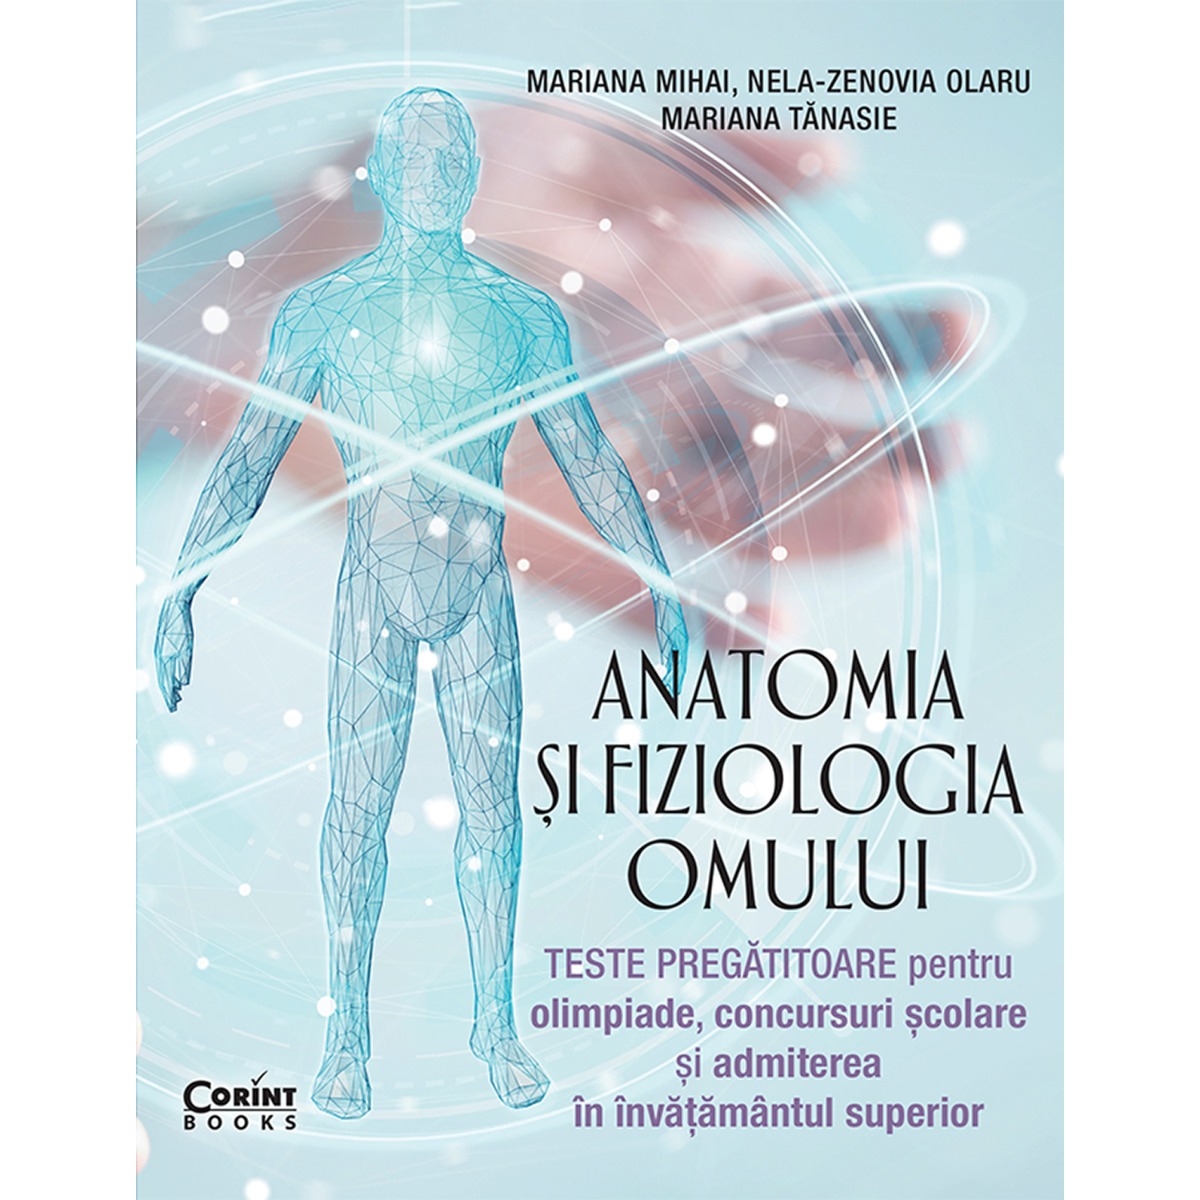 Anatomia si fiziologia omului, Mariana Mihai, Nela-Zenovia Olaru, Mariana Tanasie